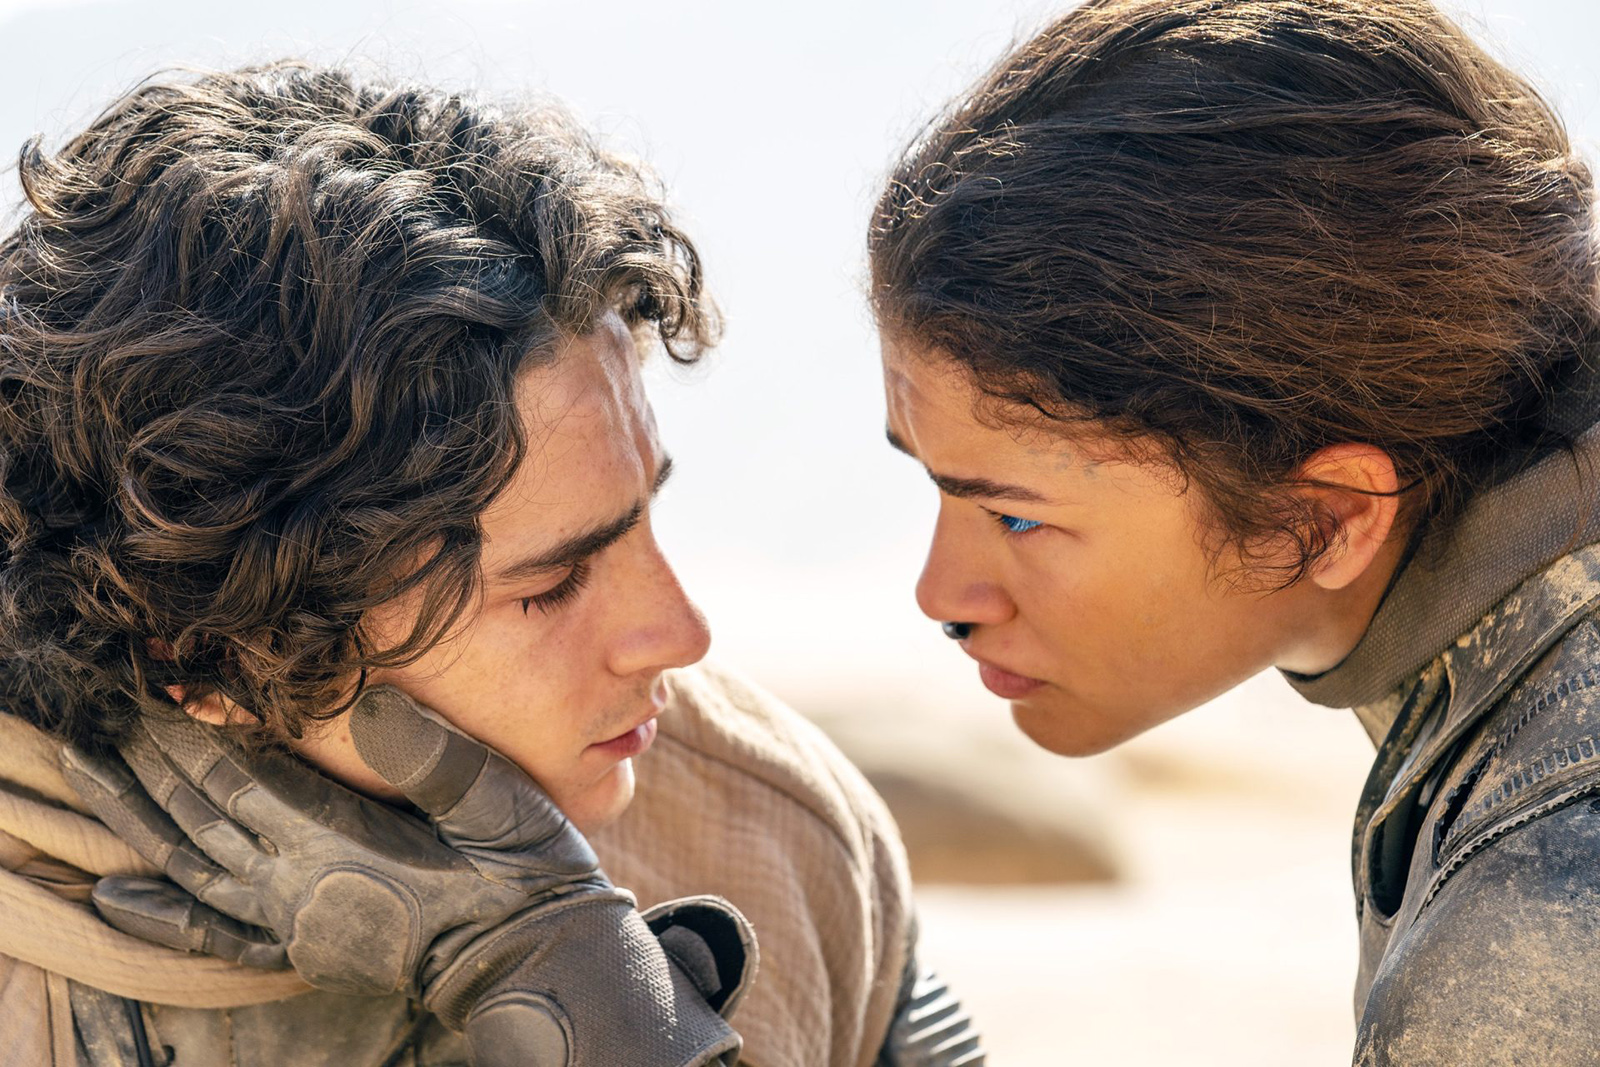 Actors Timothée Chalamet and Zendaya in “Dune: Part Two." (Photo © Warner Bros.)